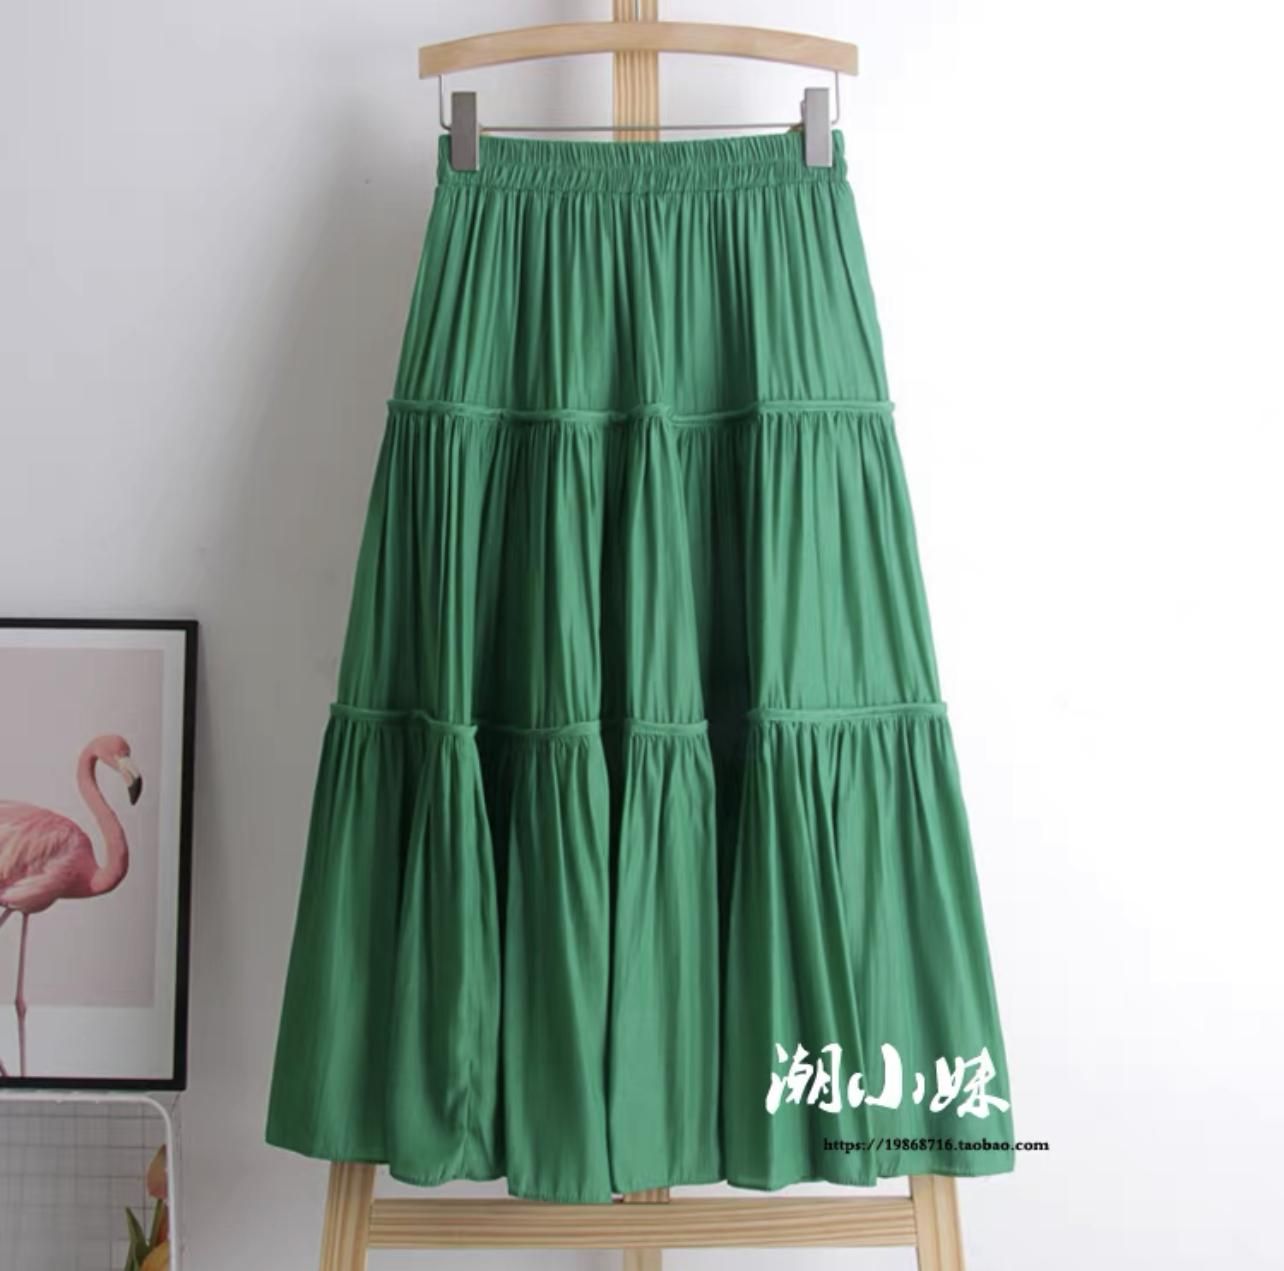 Hàng Quảng Châu] Váy bầu cao cấp💕đầm bầu thiết kế sang chảnh mặc đi làm đi  chơi đều được💕Free size 45~ 67kg, M14 | Lazada.vn